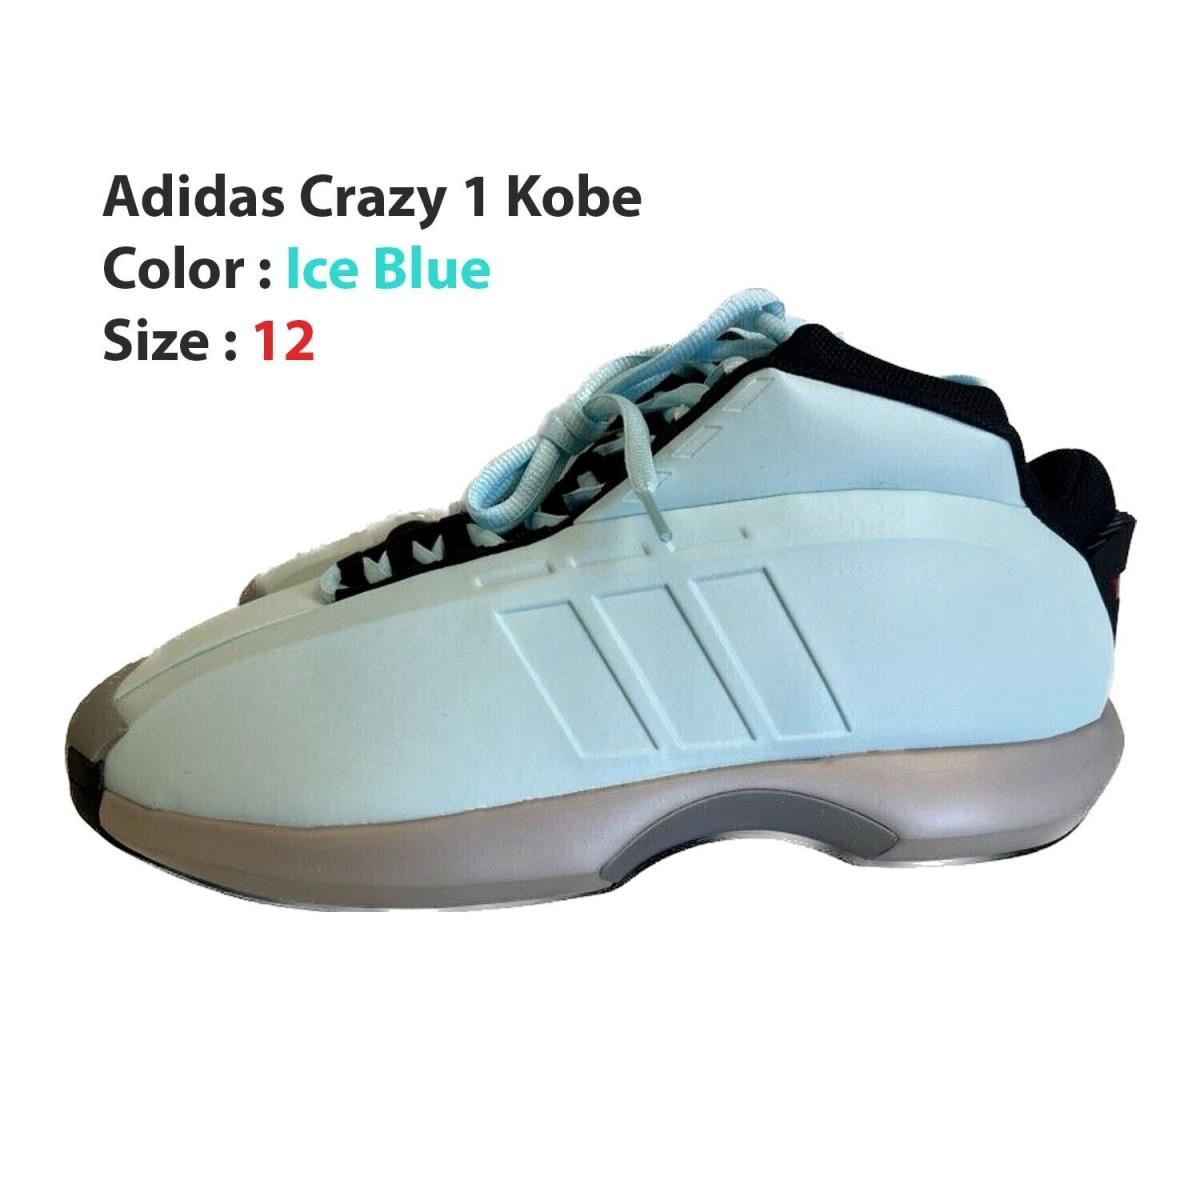 Adidas Crazy 1 Kobe - Ice Blue - IG5896 Men`s Shoes - Us Shoe Size 12 - Blue